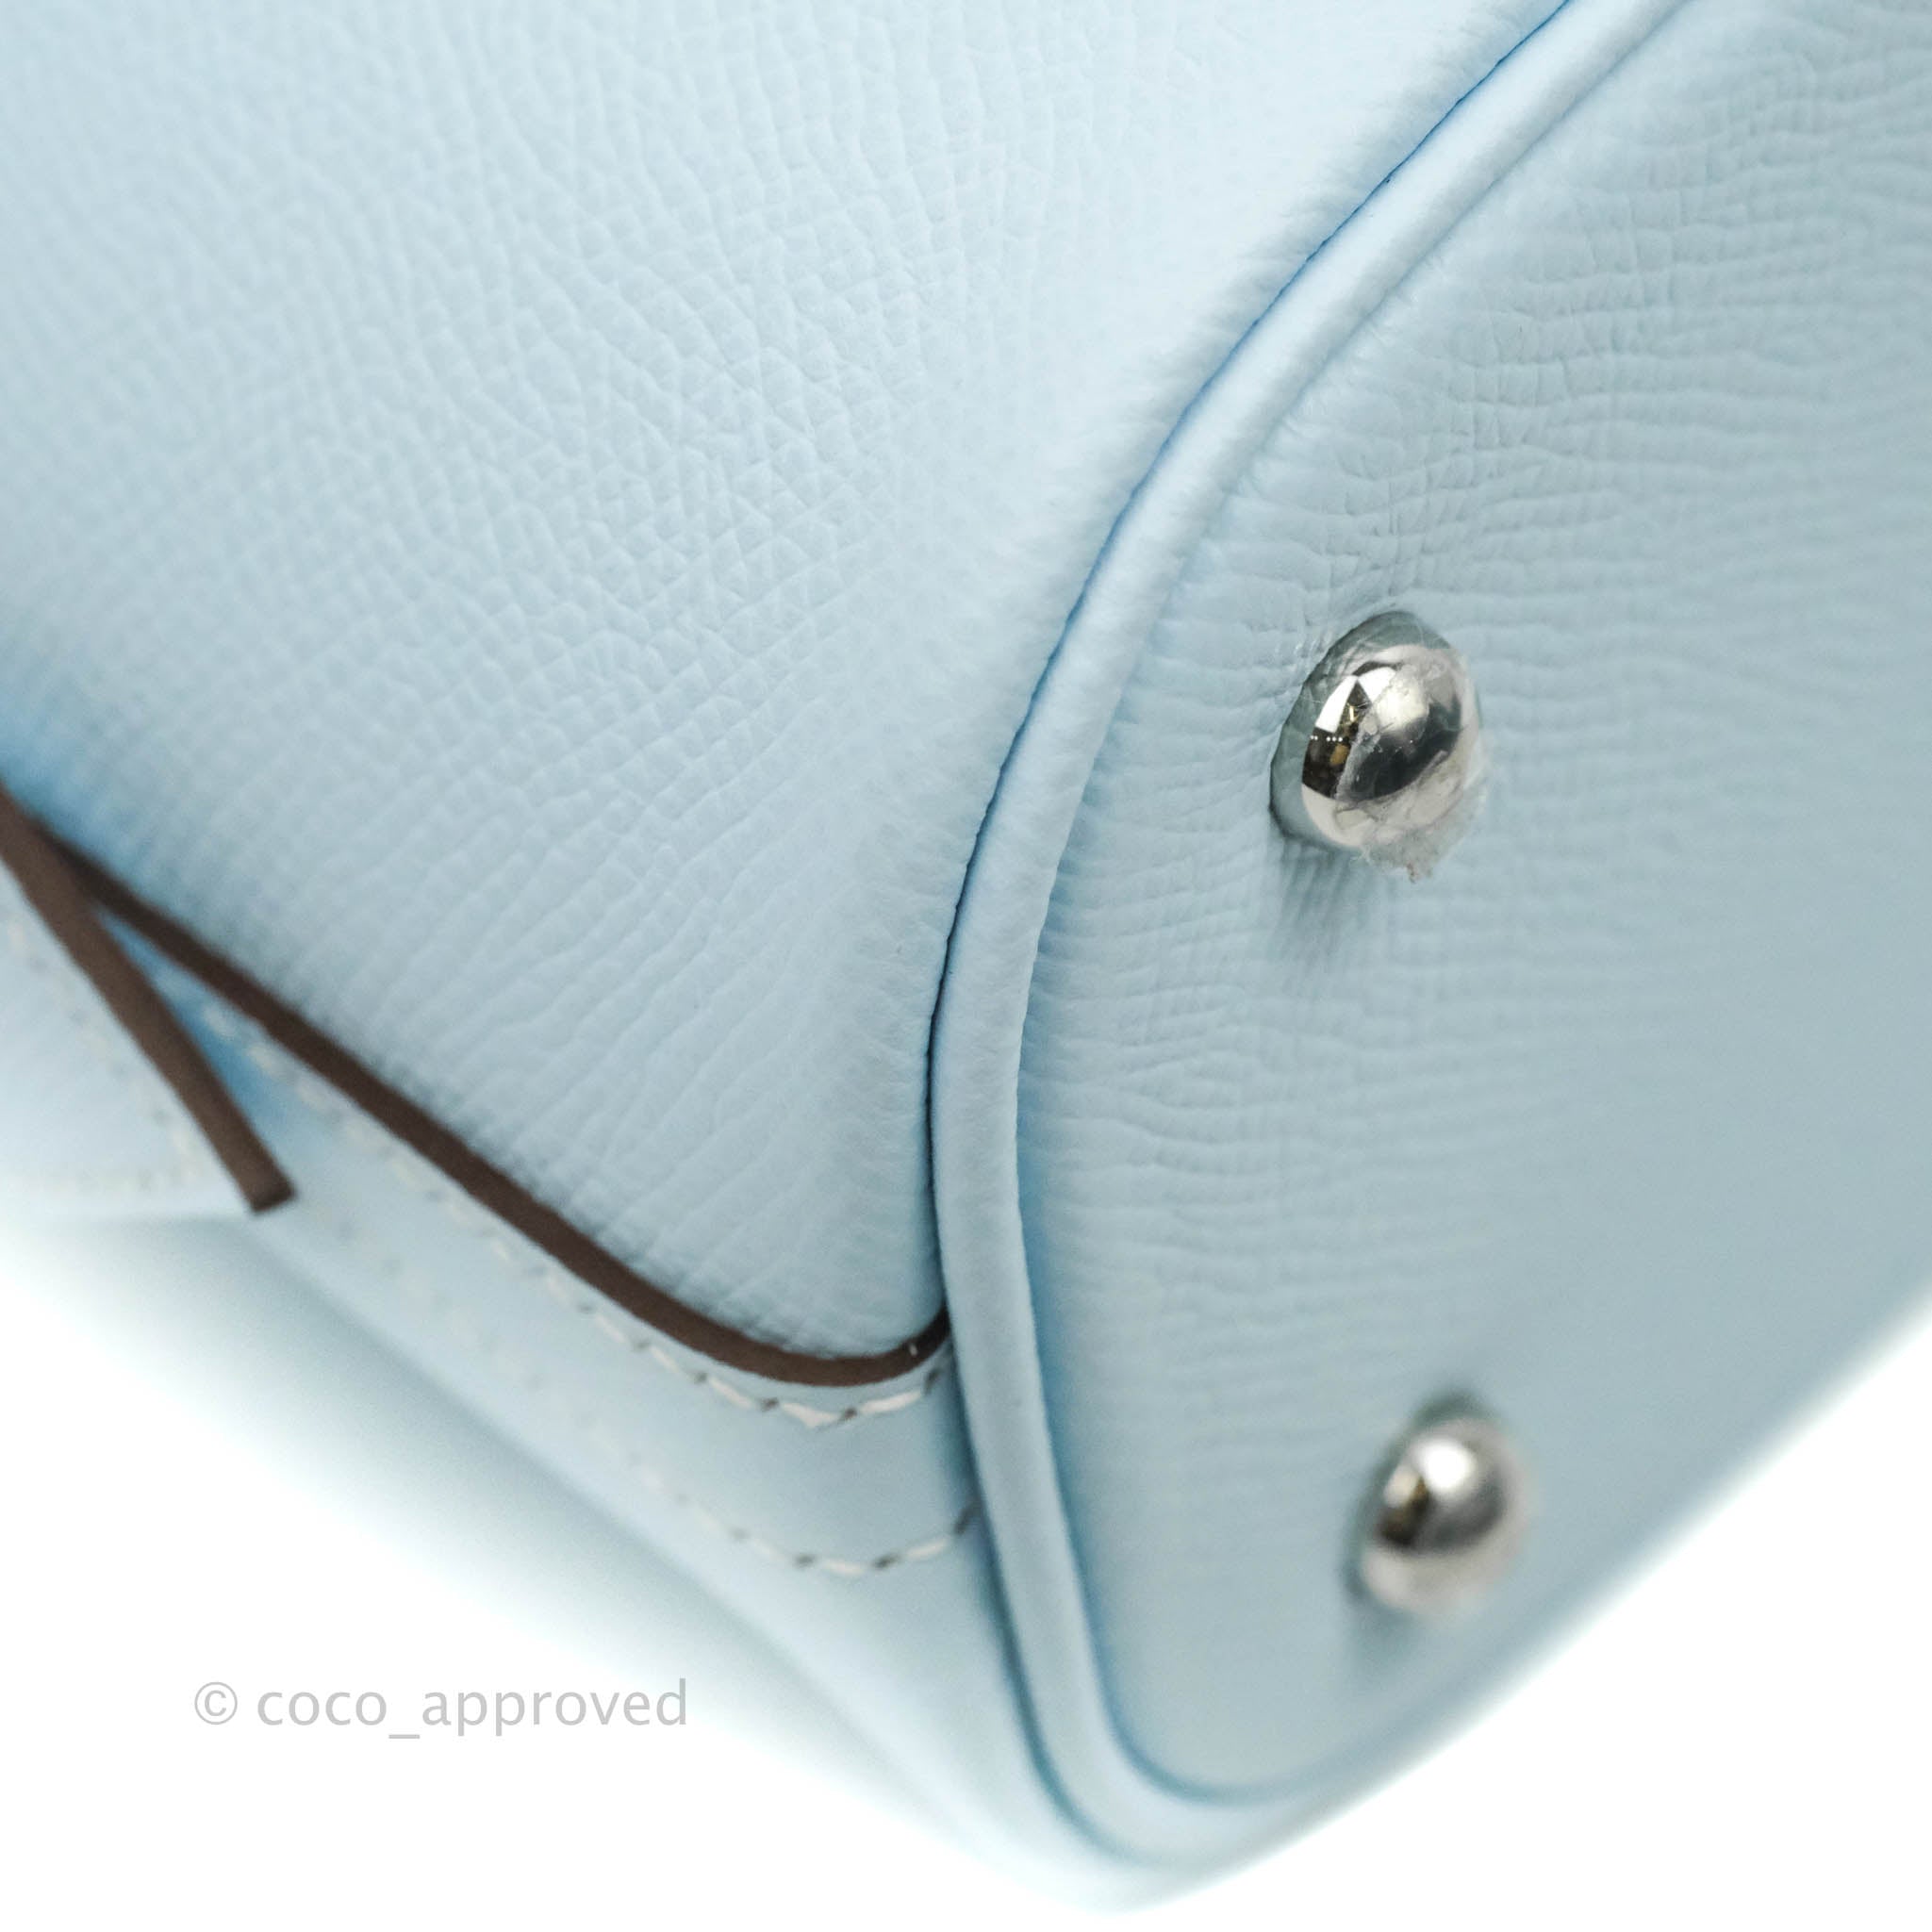 Hermes Paris Bombay Teal Blue Leather Bag Auction